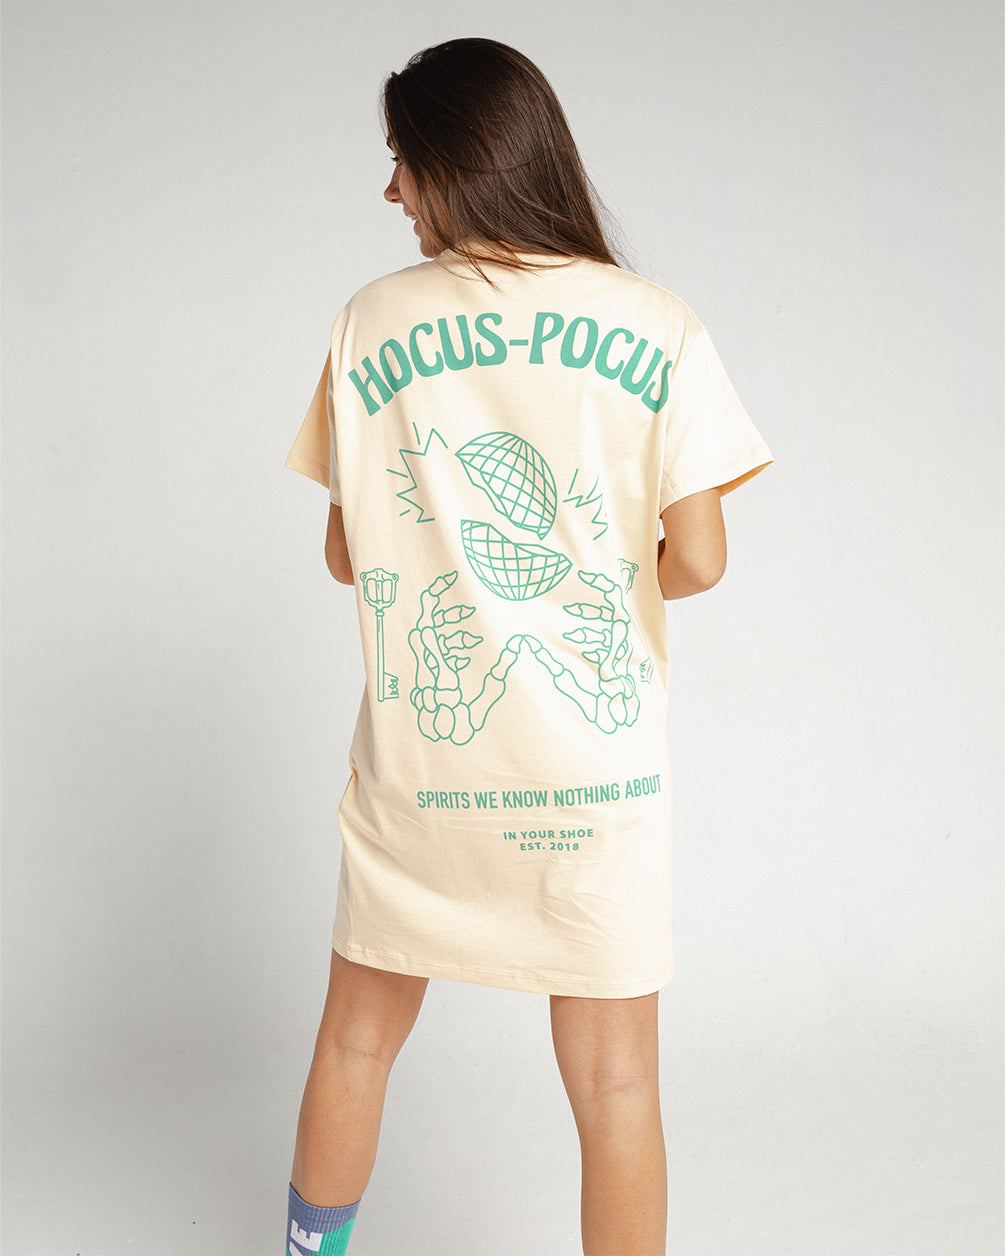 Hocus Pocus T-Shirt Dress T-Shirt Dresses IN YOUR SHOE S-M 